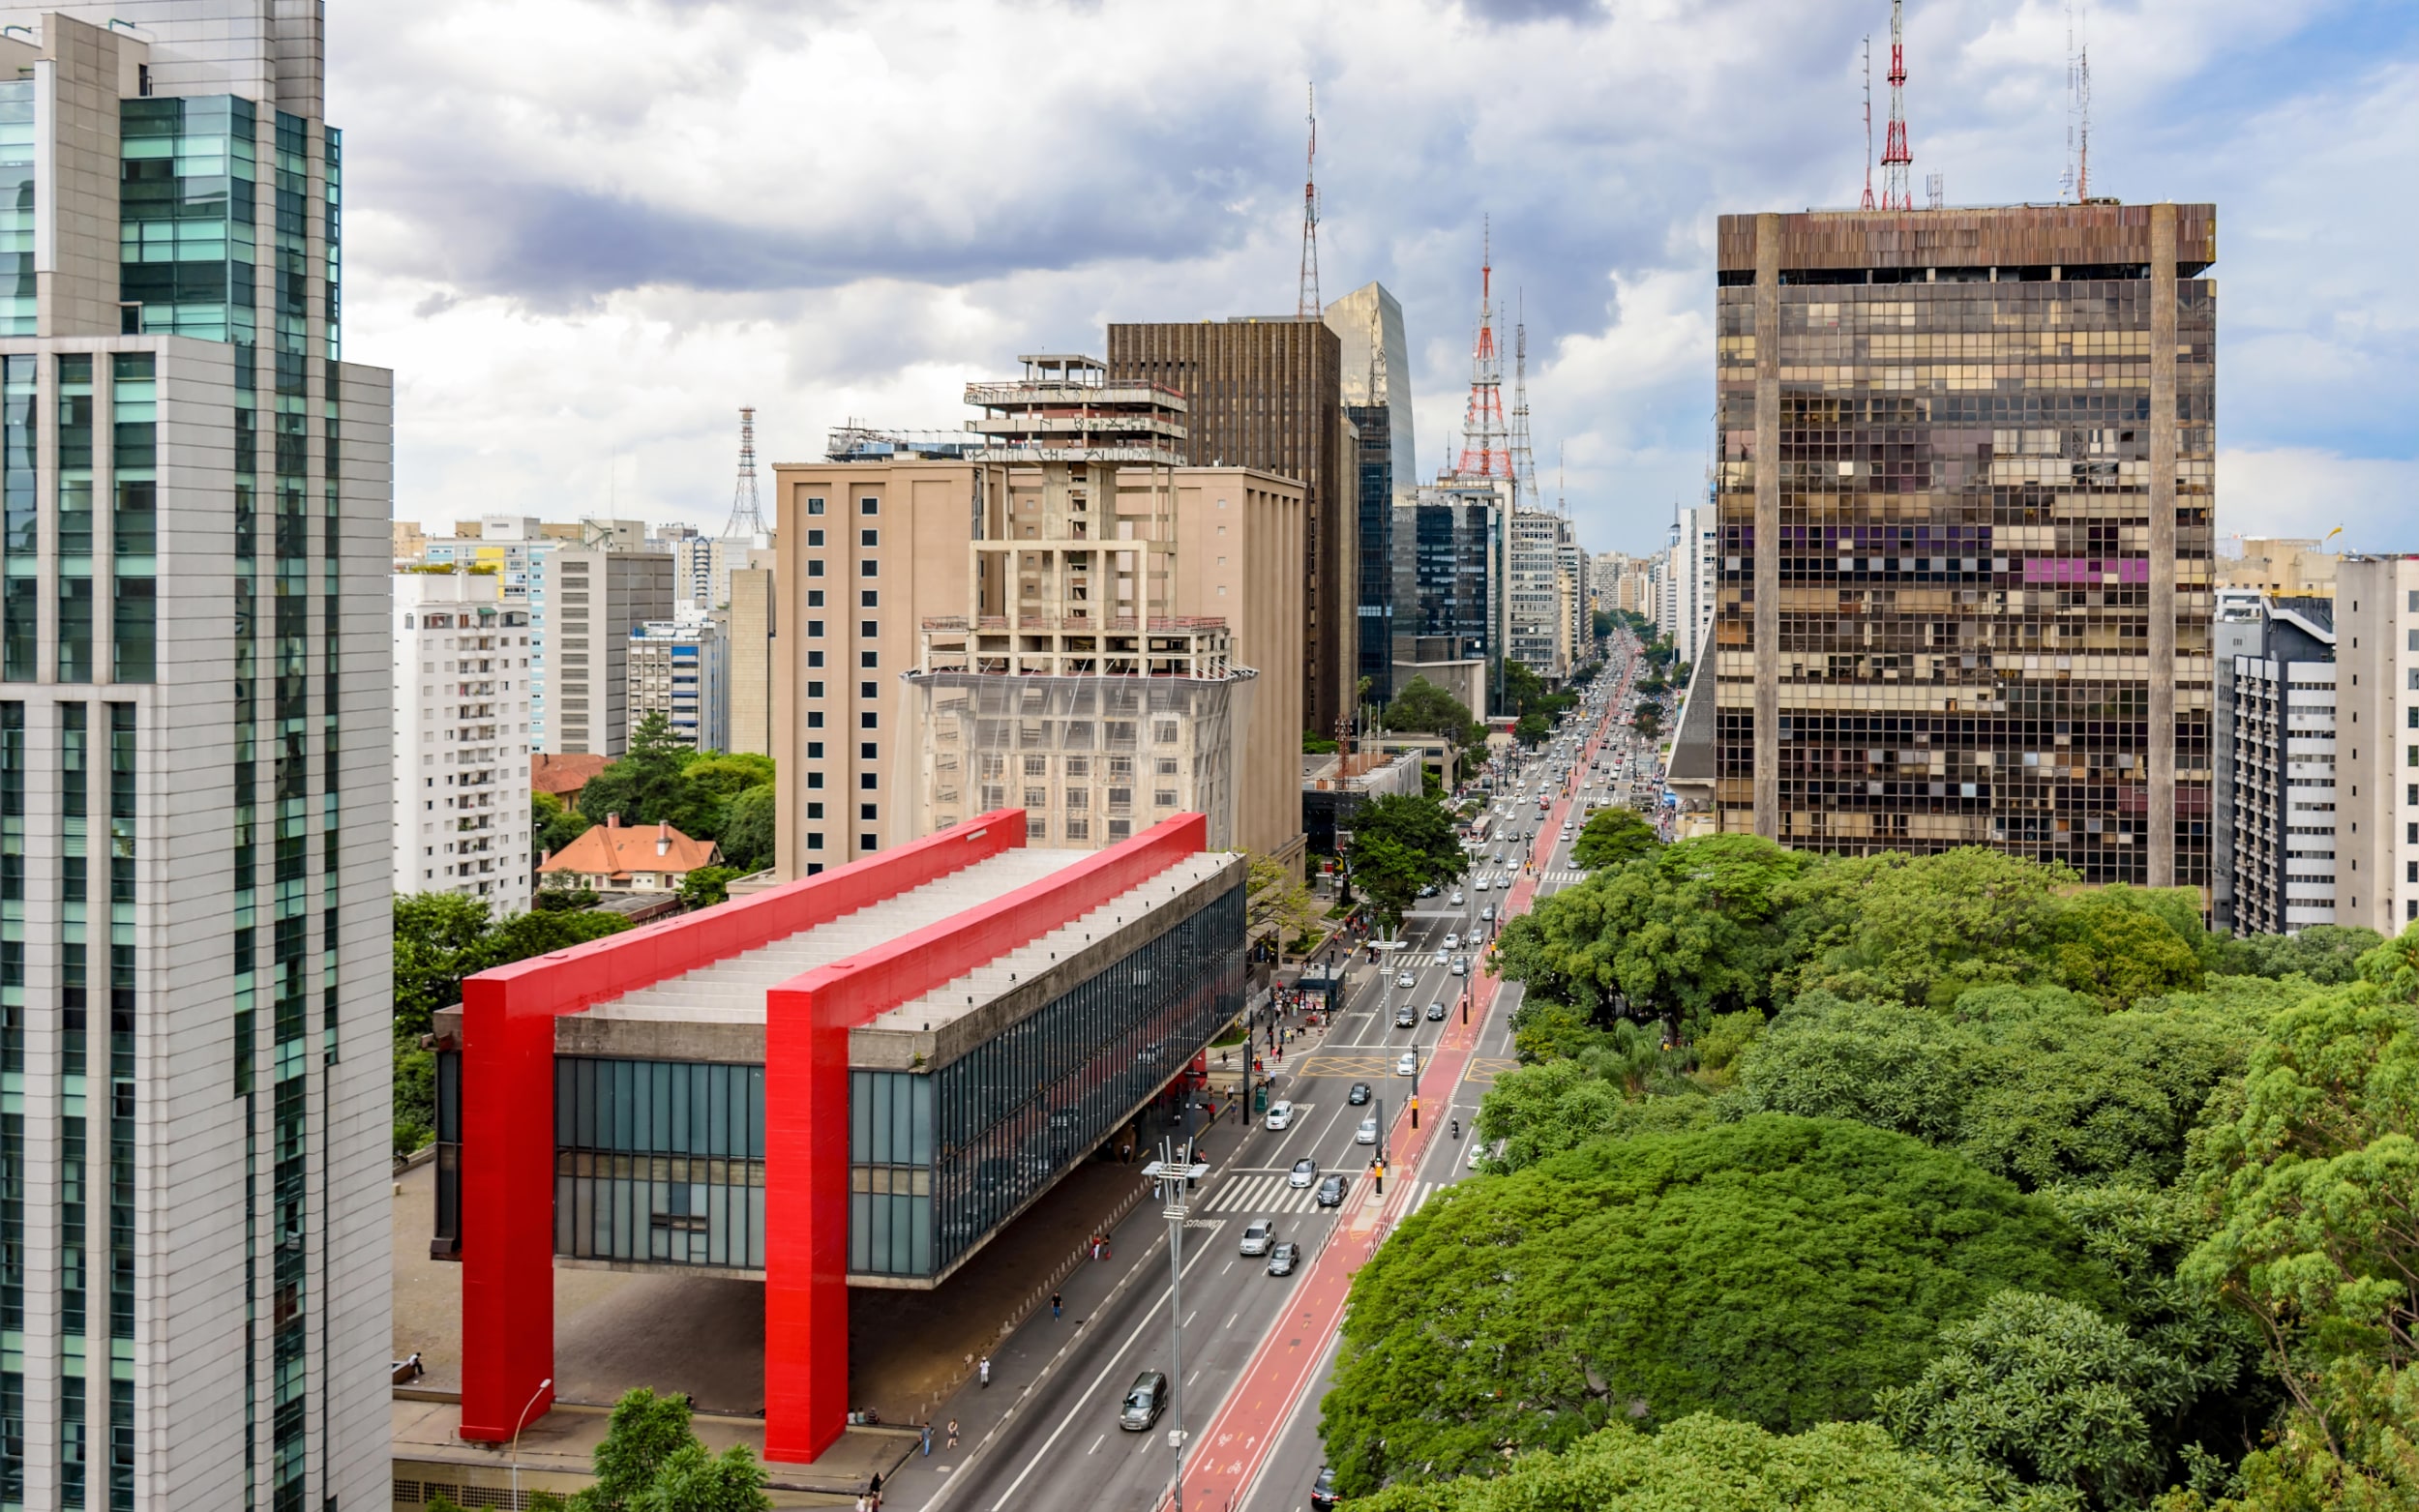 ¡Puaj! 32+ Verdades reales que no sabías antes sobre São Paulo